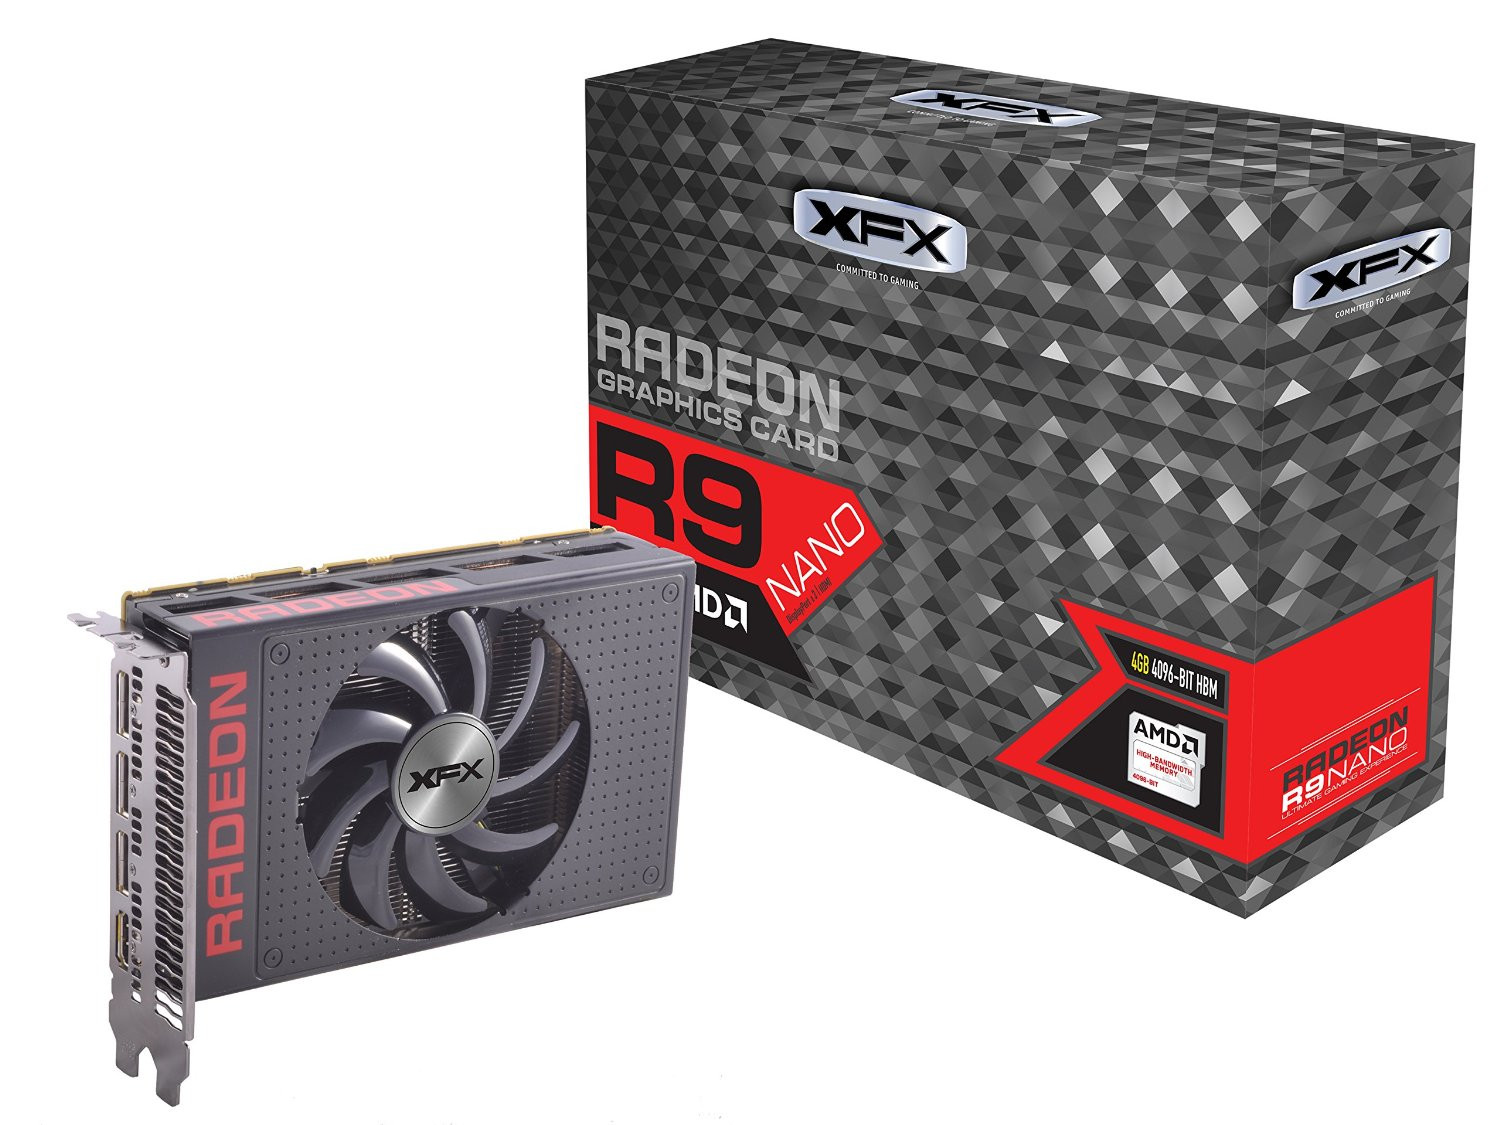 Κυκλοφόρησε η XFX Radeon R9 Nano κάρτα γραφικών